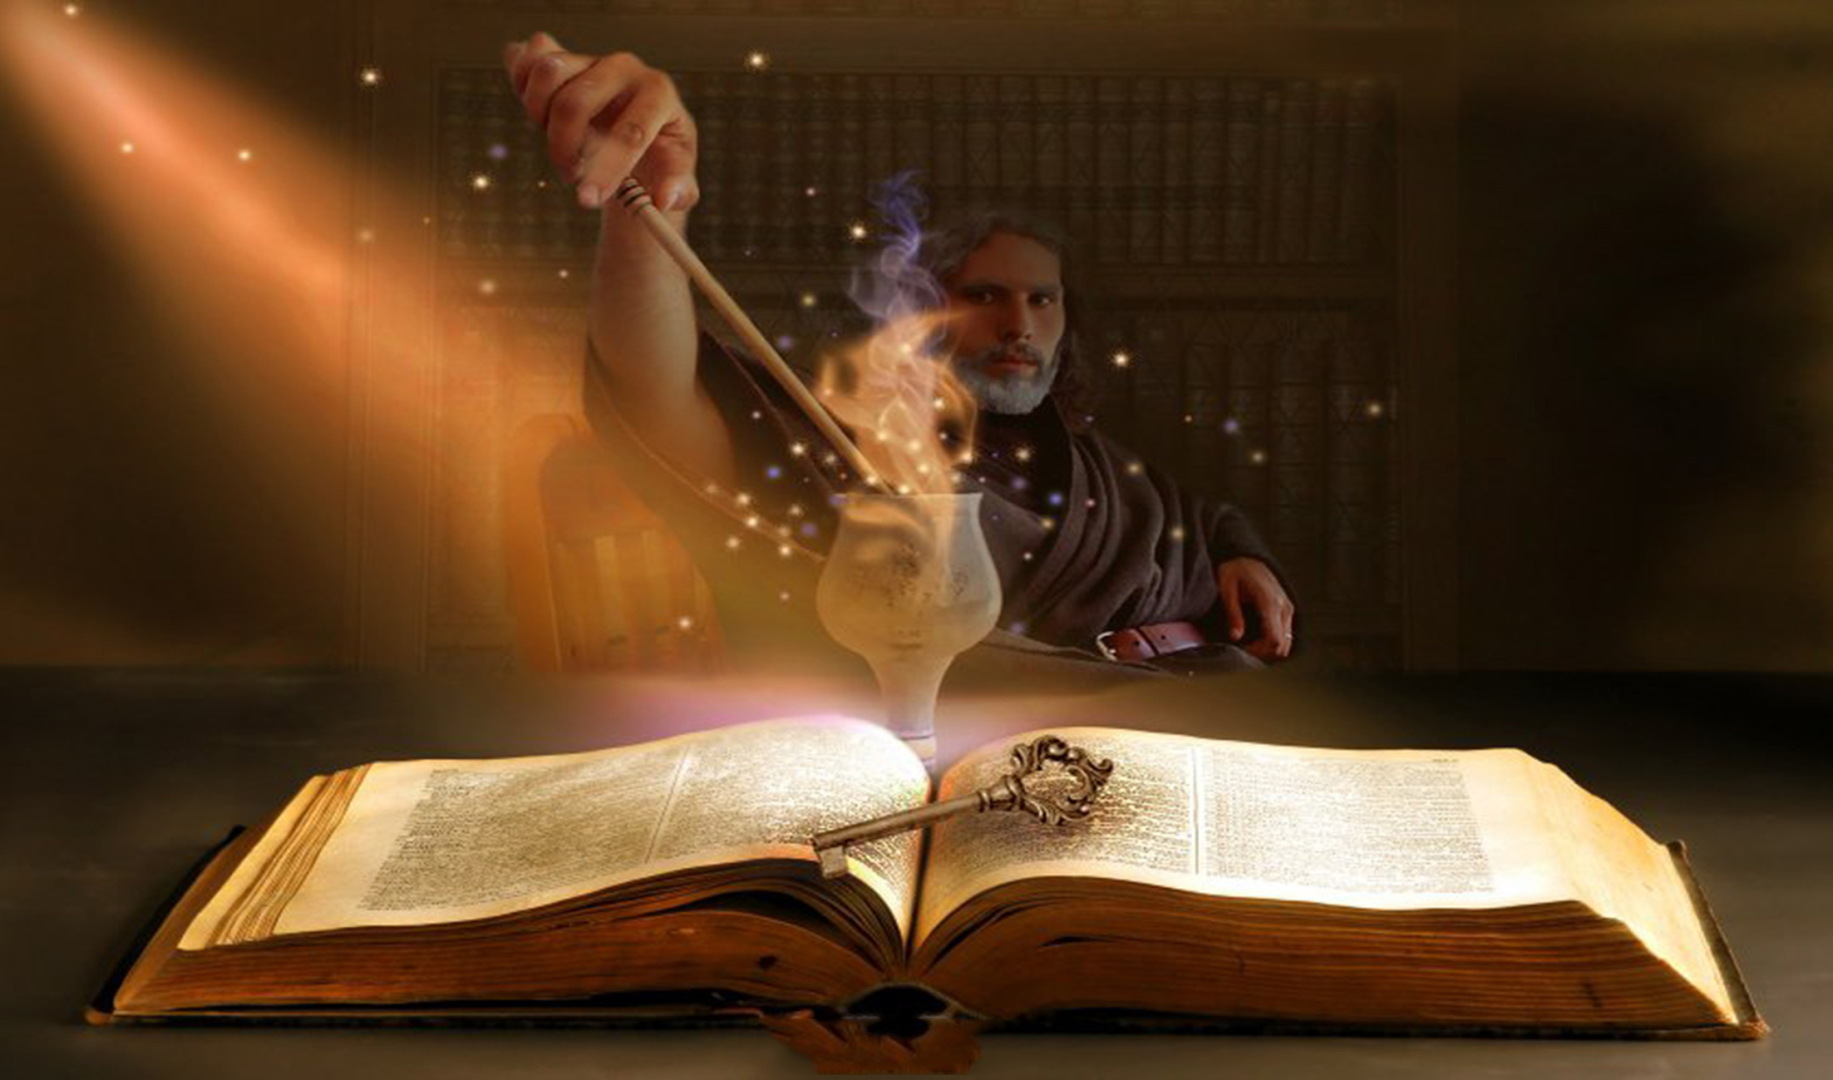 Волшебство слов. Волшебство и магия. Книга магов. Знания мудрость. Волшебство поэзии.